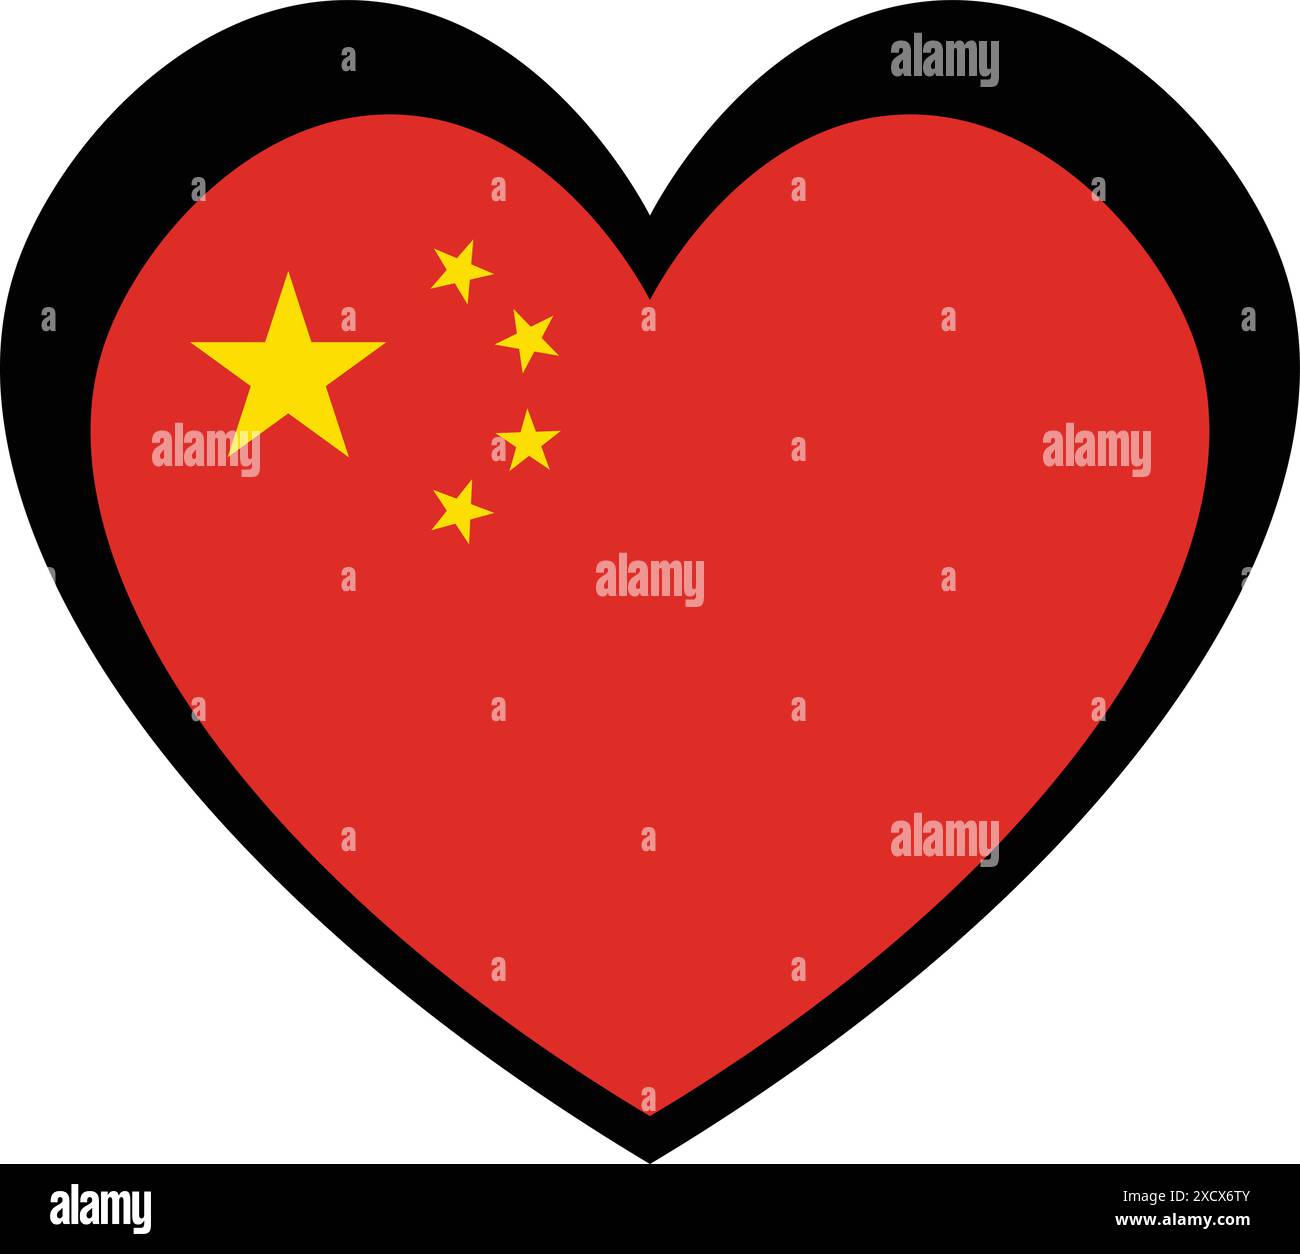 Une illustration d'une icône de coeur avec le drapeau de la Chine, symbolisant l'amour et la fierté pour la Chine avec sa couleur rouge audacieuse. Illustration de Vecteur